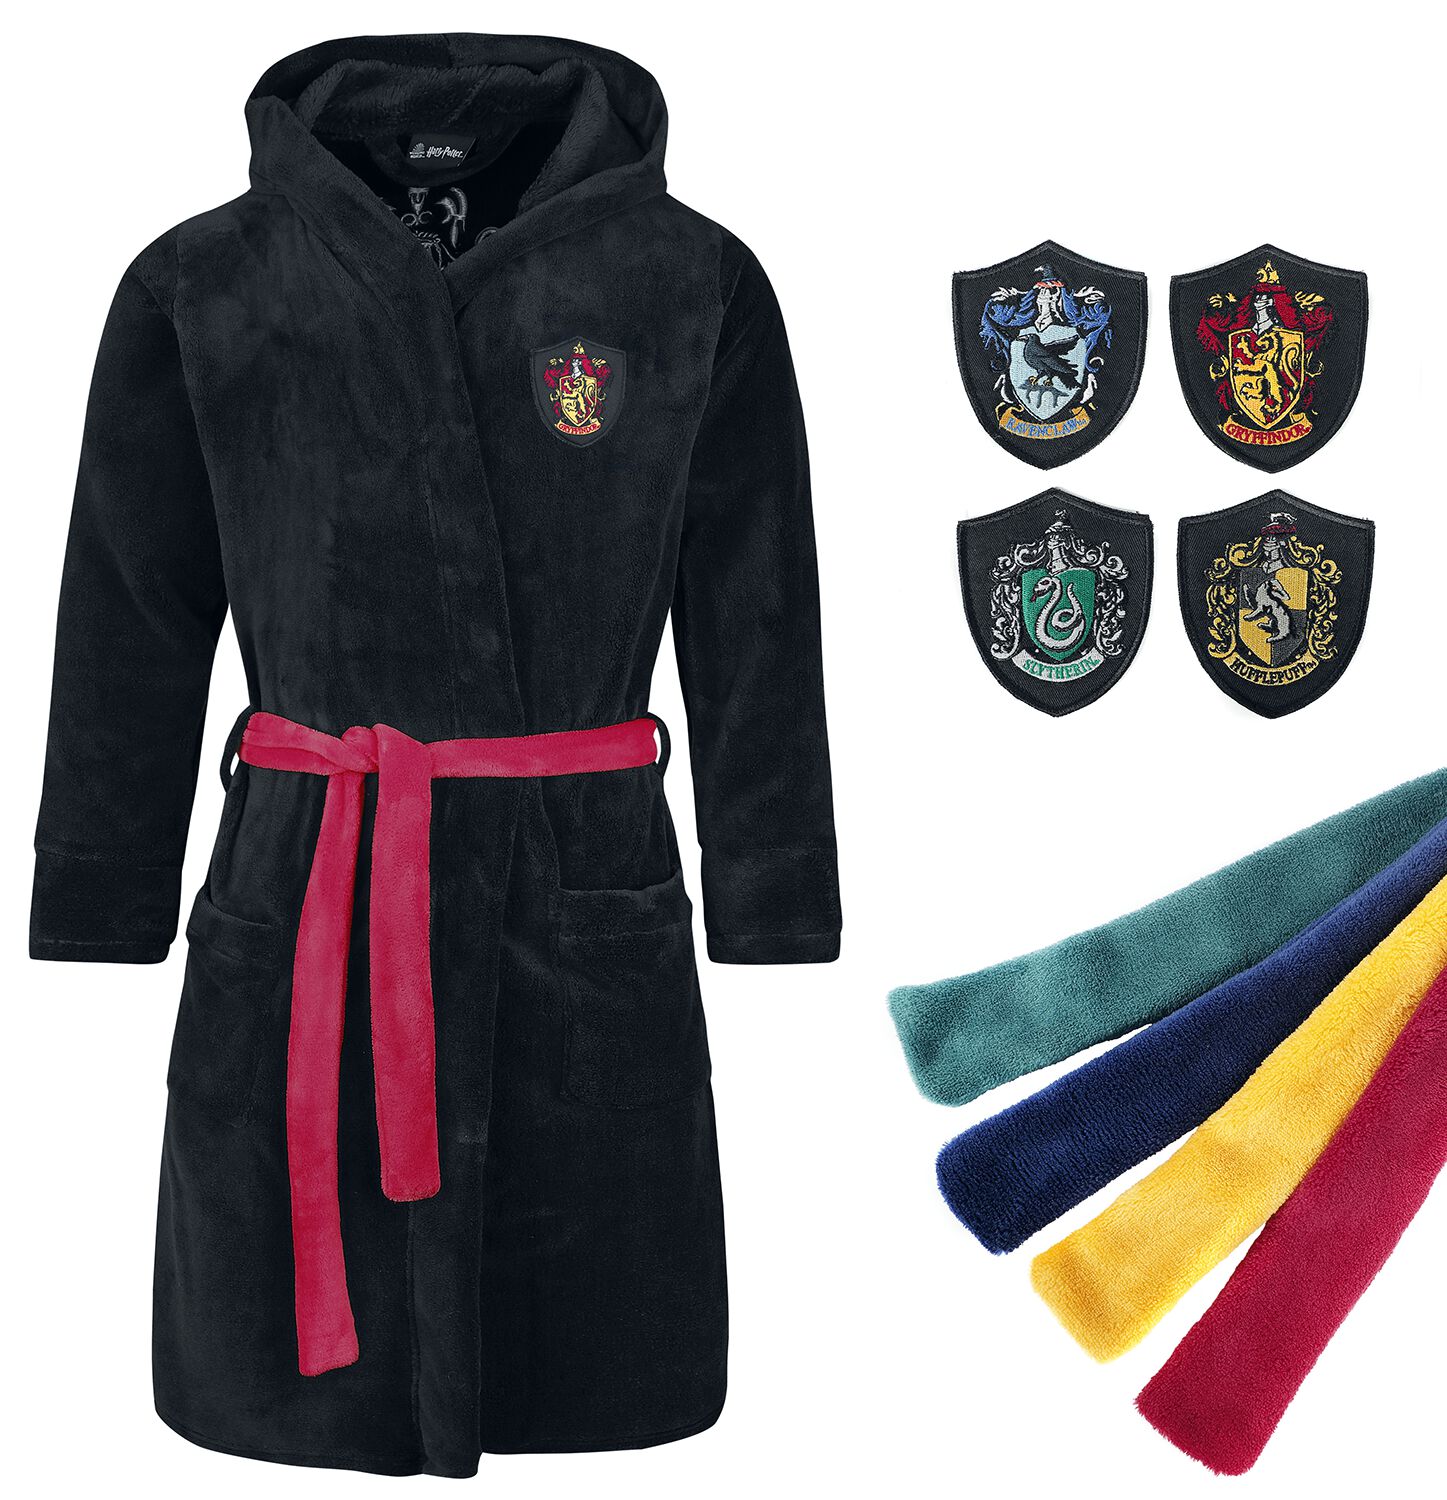 Harry Potter Bademantel - Häuser - S-M bis L-XL - für Damen - Größe S-M - schwarz  - EMP exklusives Merchandise!